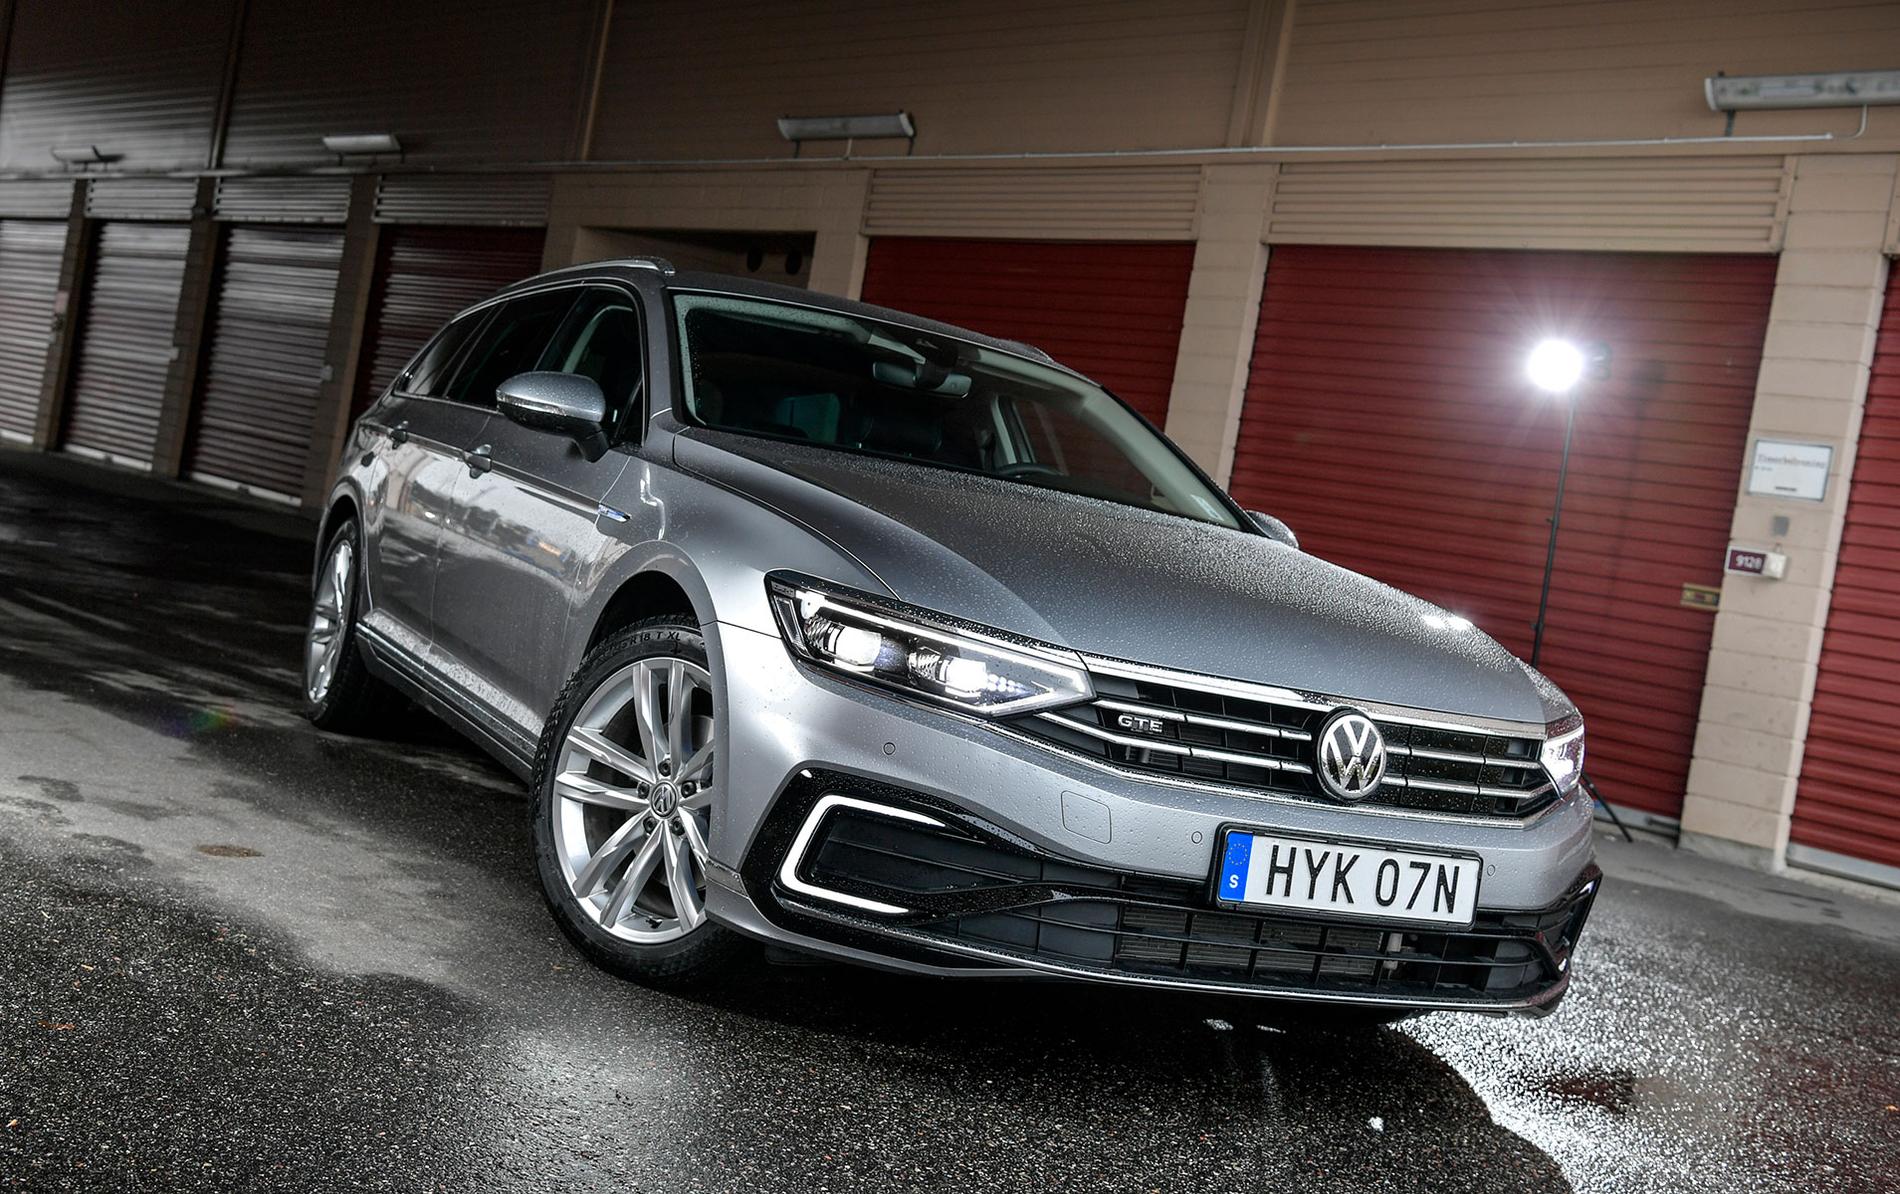 ”Har man 15 Volkswagen som ser exakt likadana ut, men en av dem har lite snyggare fälgar eller något annat som sticker ut, så blir den mer attraktiv” säger Karl Wahlin, analytiker vid värderingsföretaget Bilpriser.se.